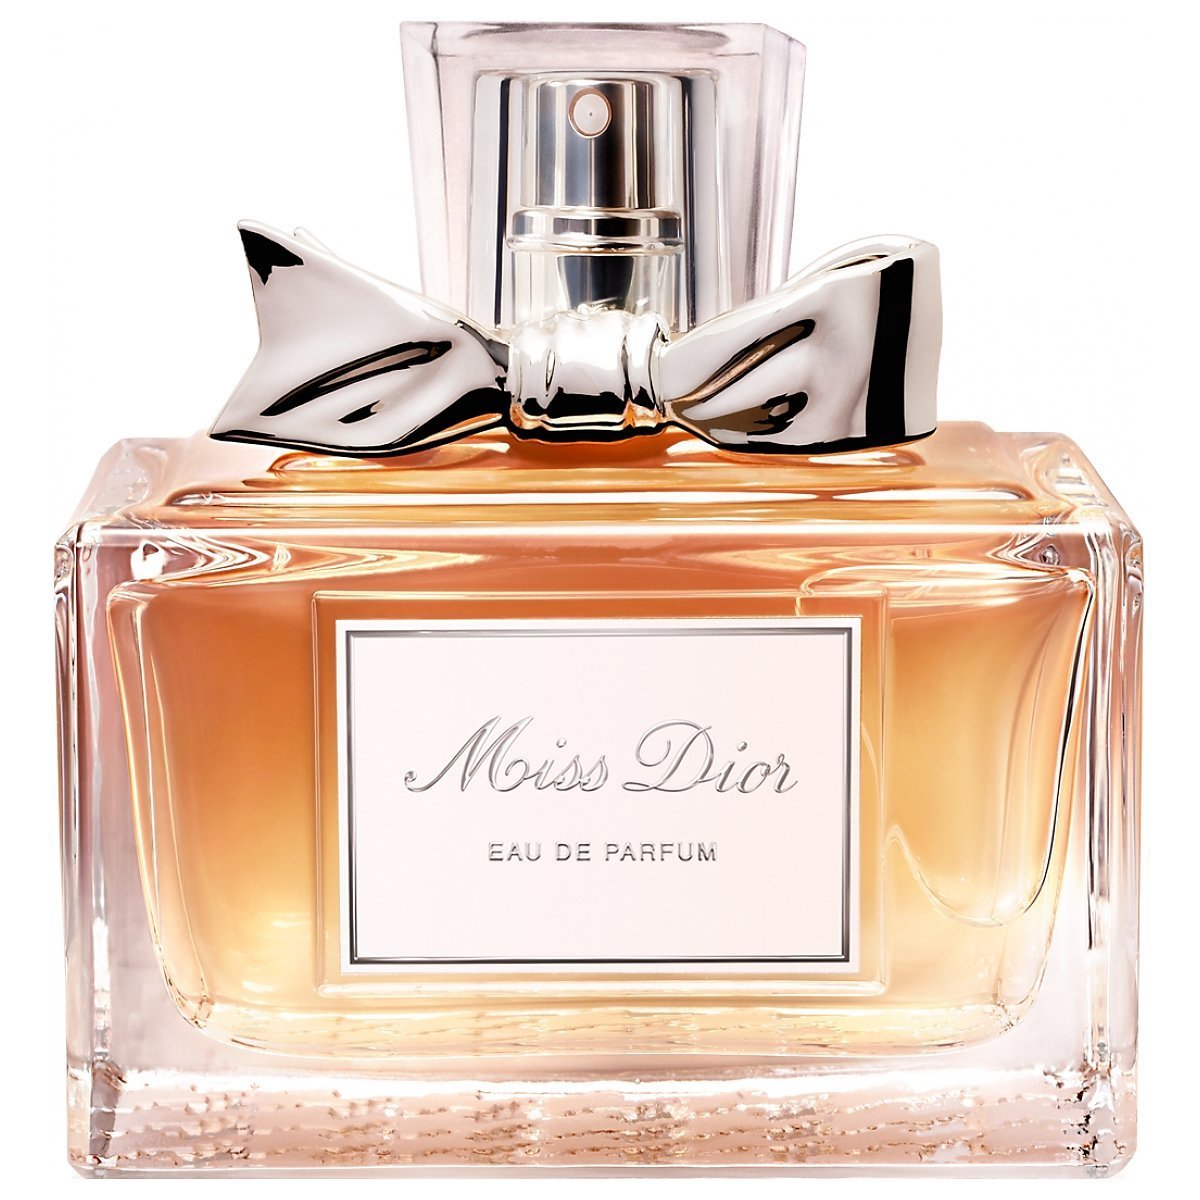 Christian Dior Parfum - Homecare24